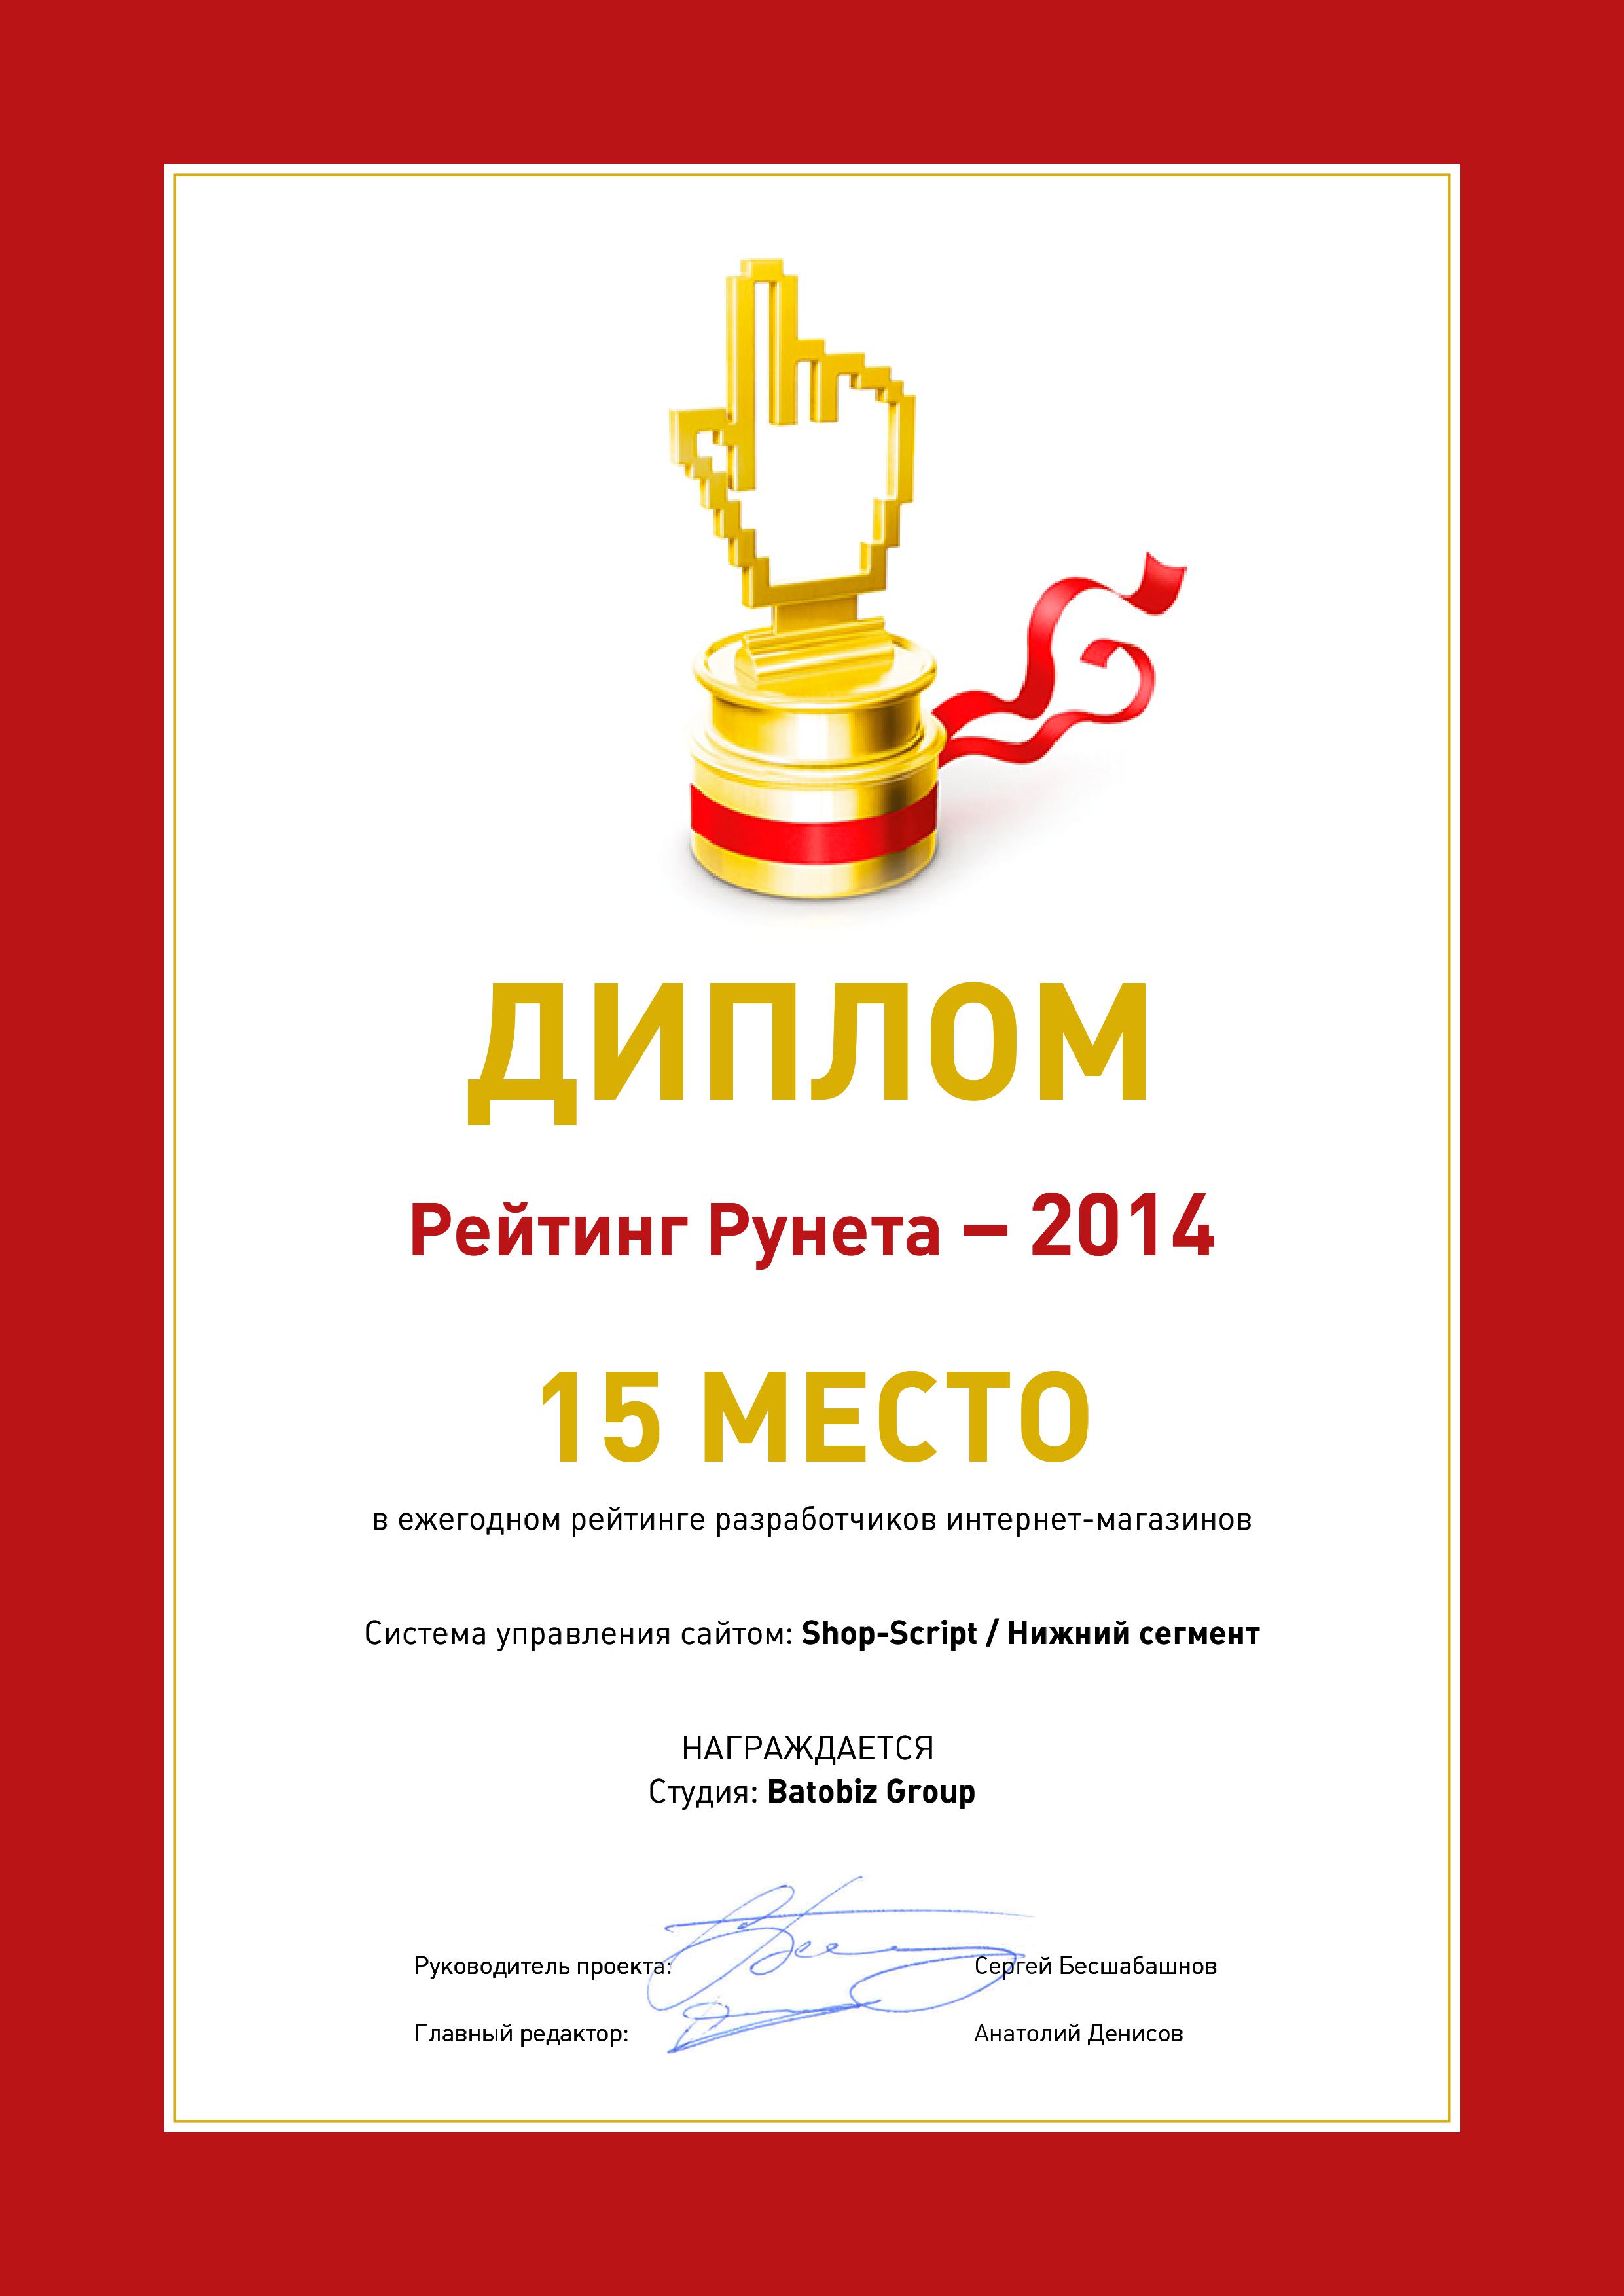 Диплом Рейтинг разработчиков интернет-магазинов 2014 / Shop-Script 15 место студия Batobiz